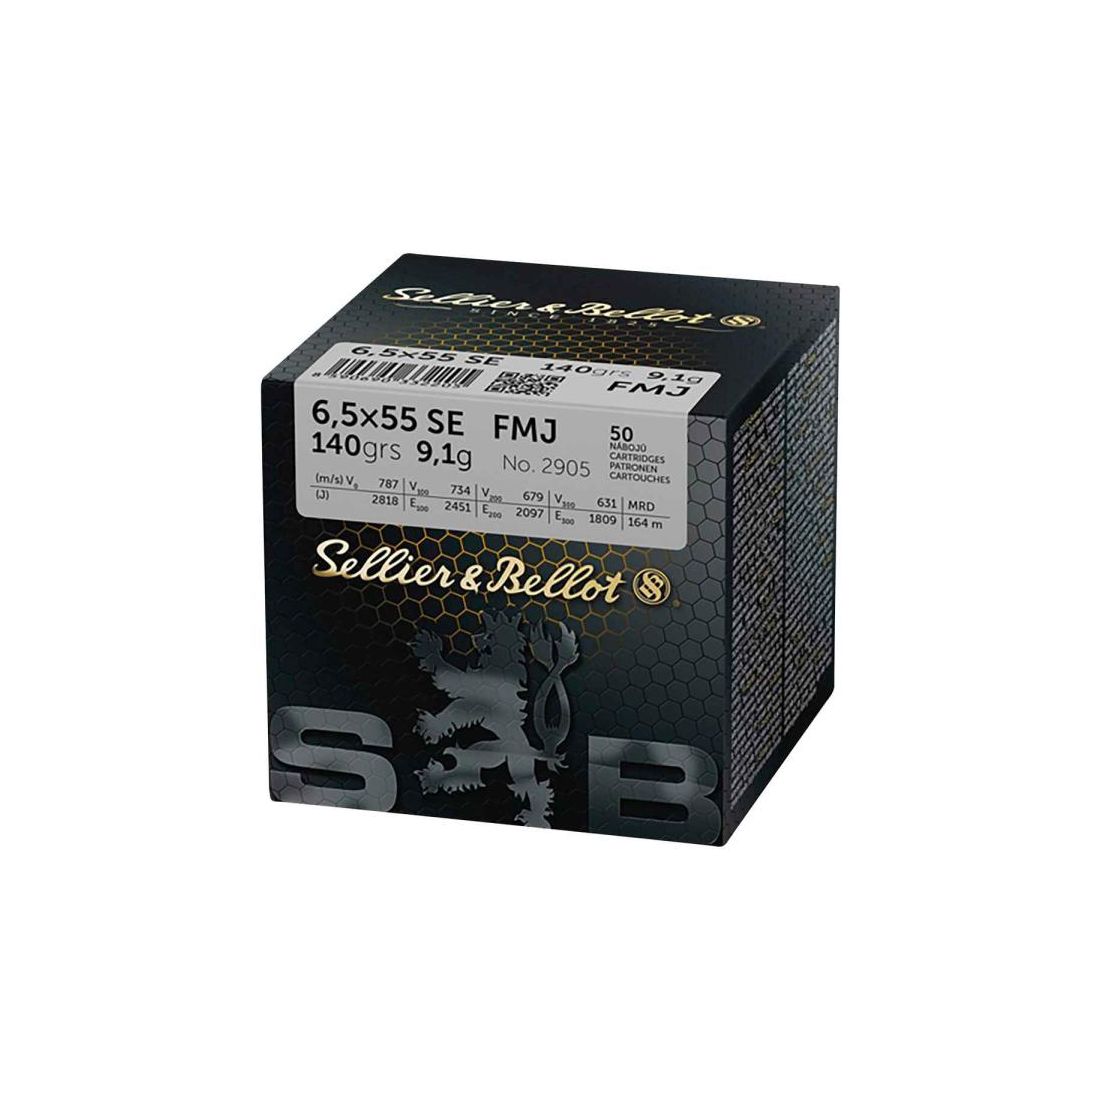 SELLIER & BELLOT Kugelpatronen 6,5x55 VM 50 Stk  9,1g/140grs